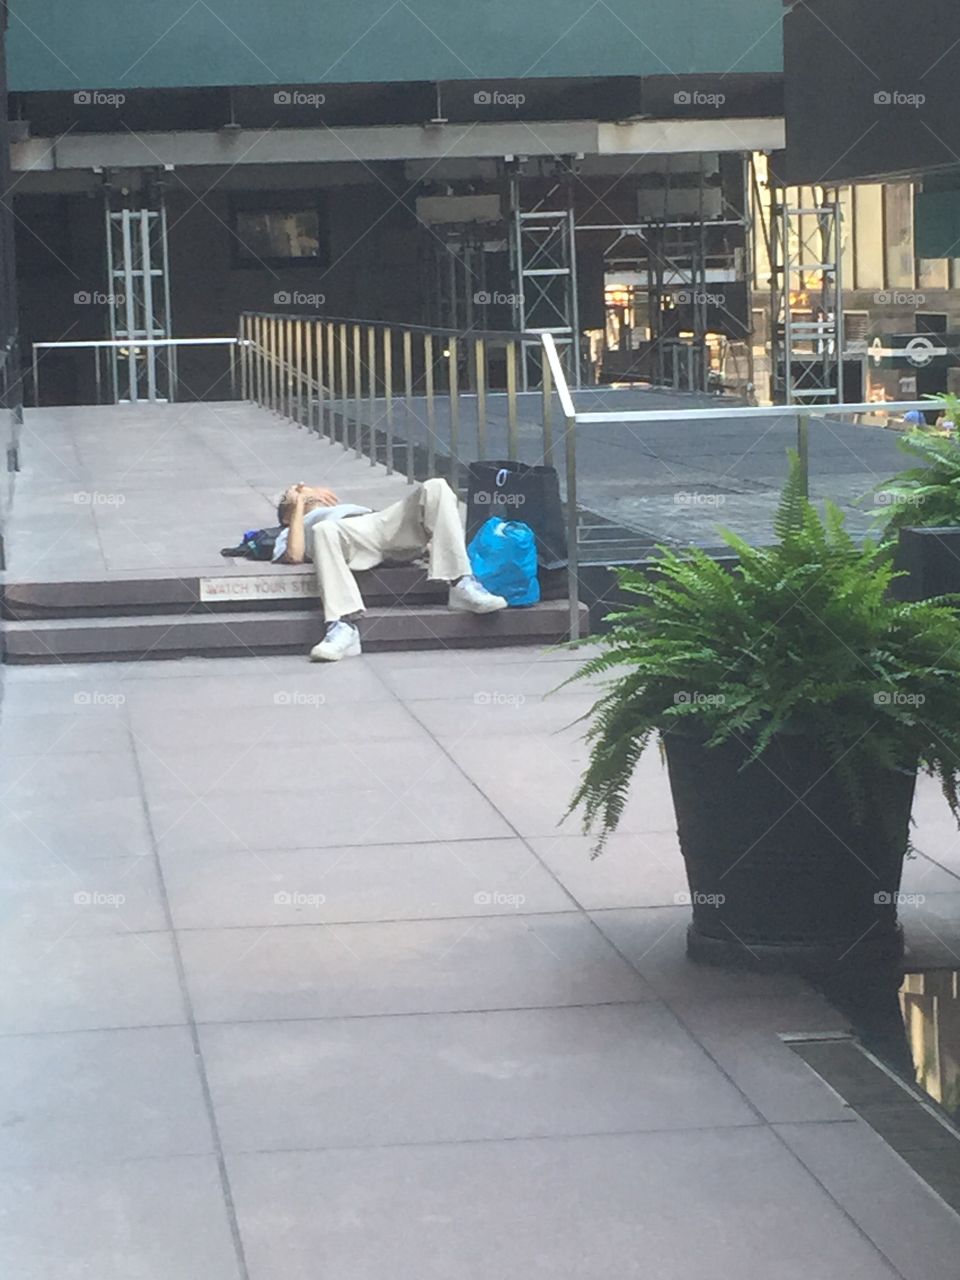 Homeless in NY